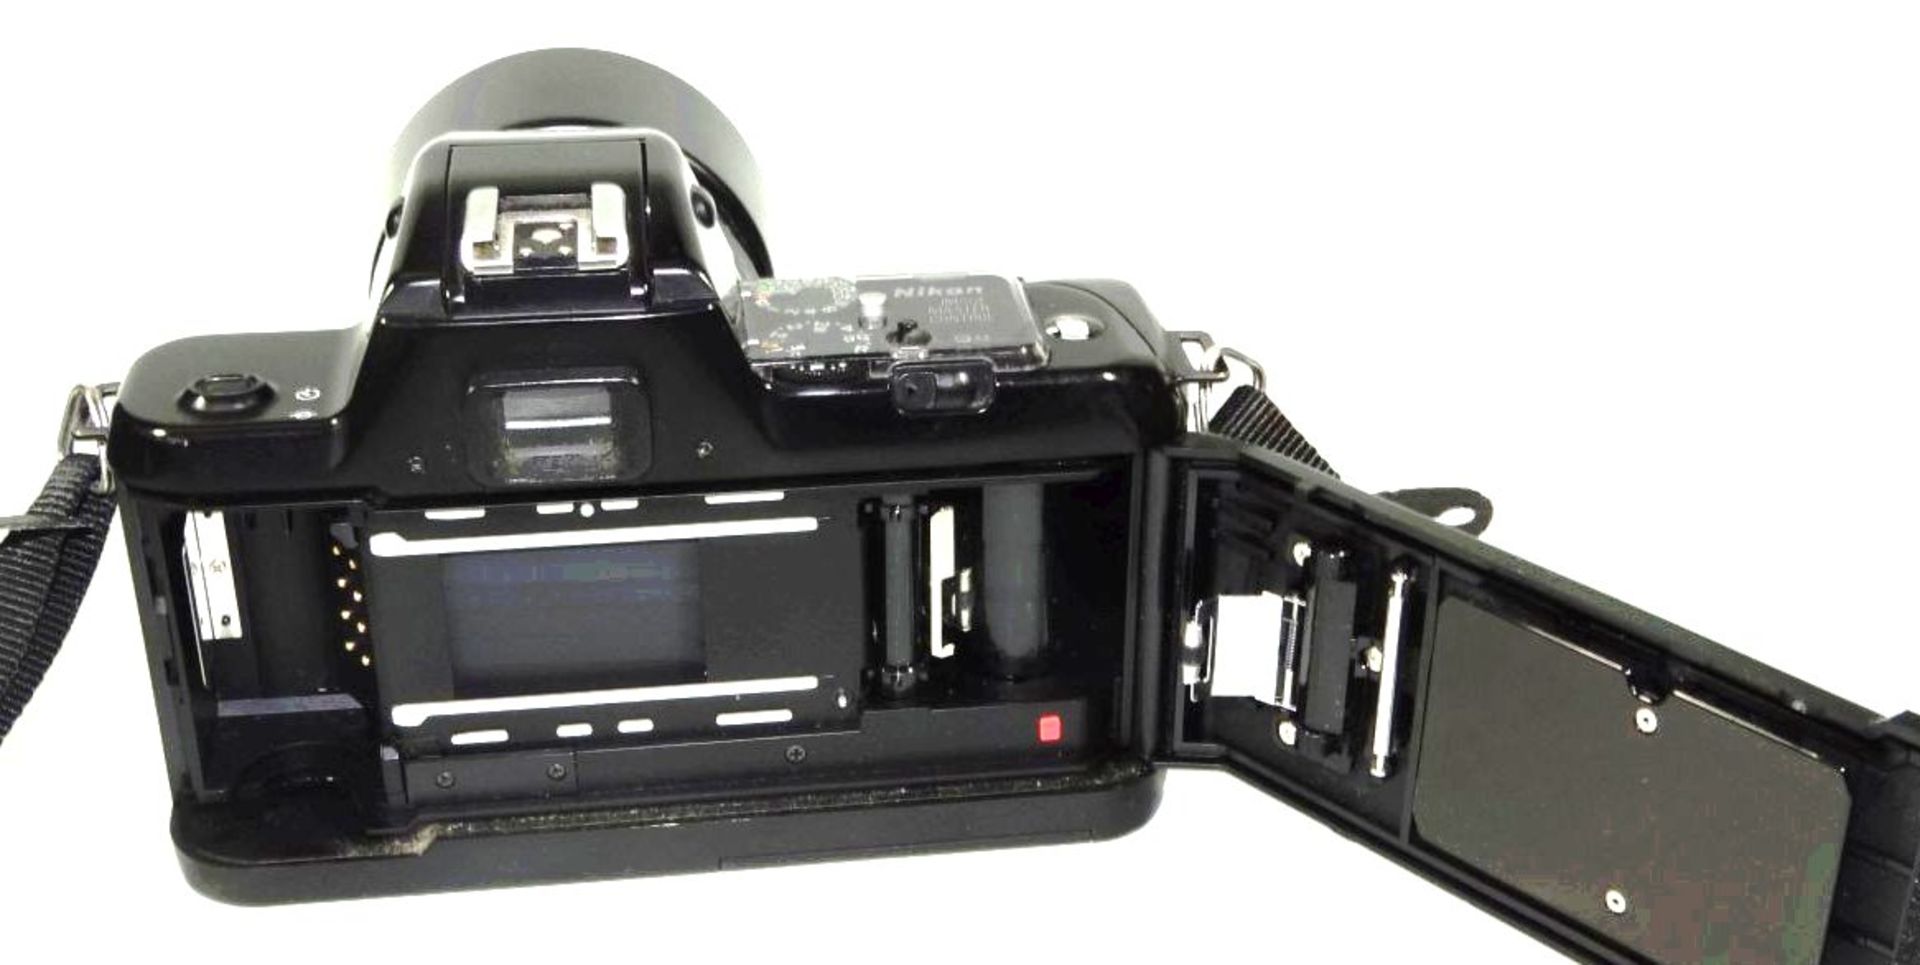 Spiegelreflex "Nikon 401 S" mit Sigma Objektiv - Bild 6 aus 6